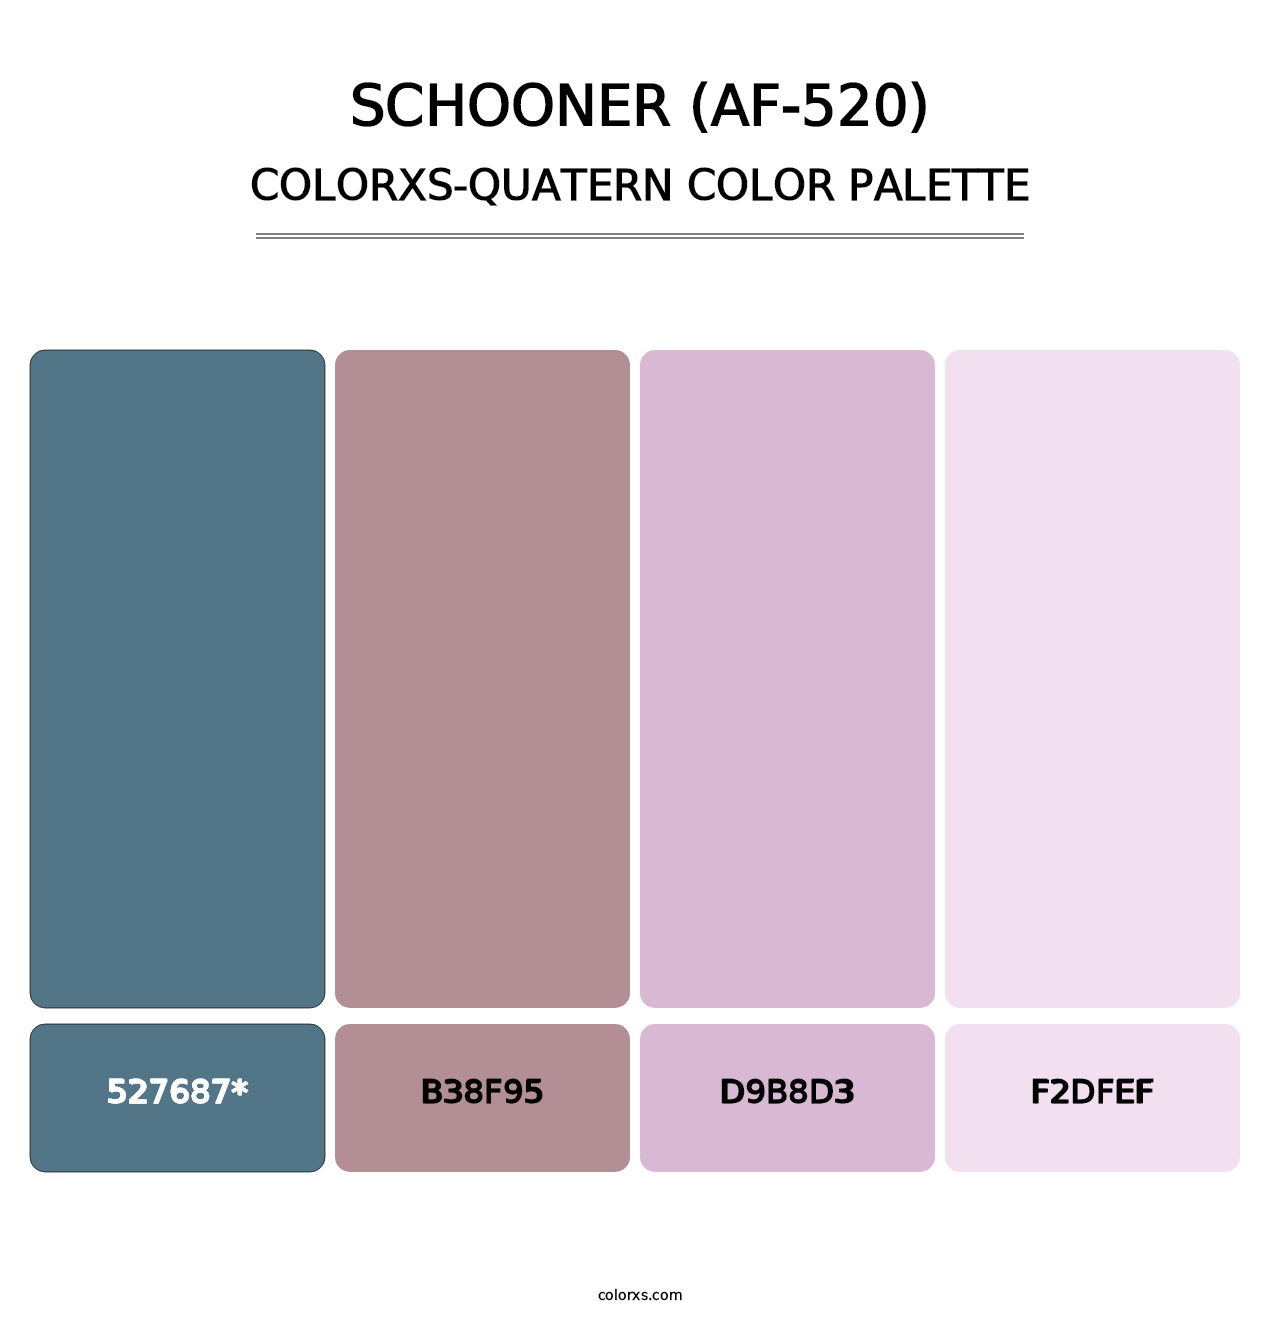 Schooner (AF-520) - Colorxs Quatern Palette